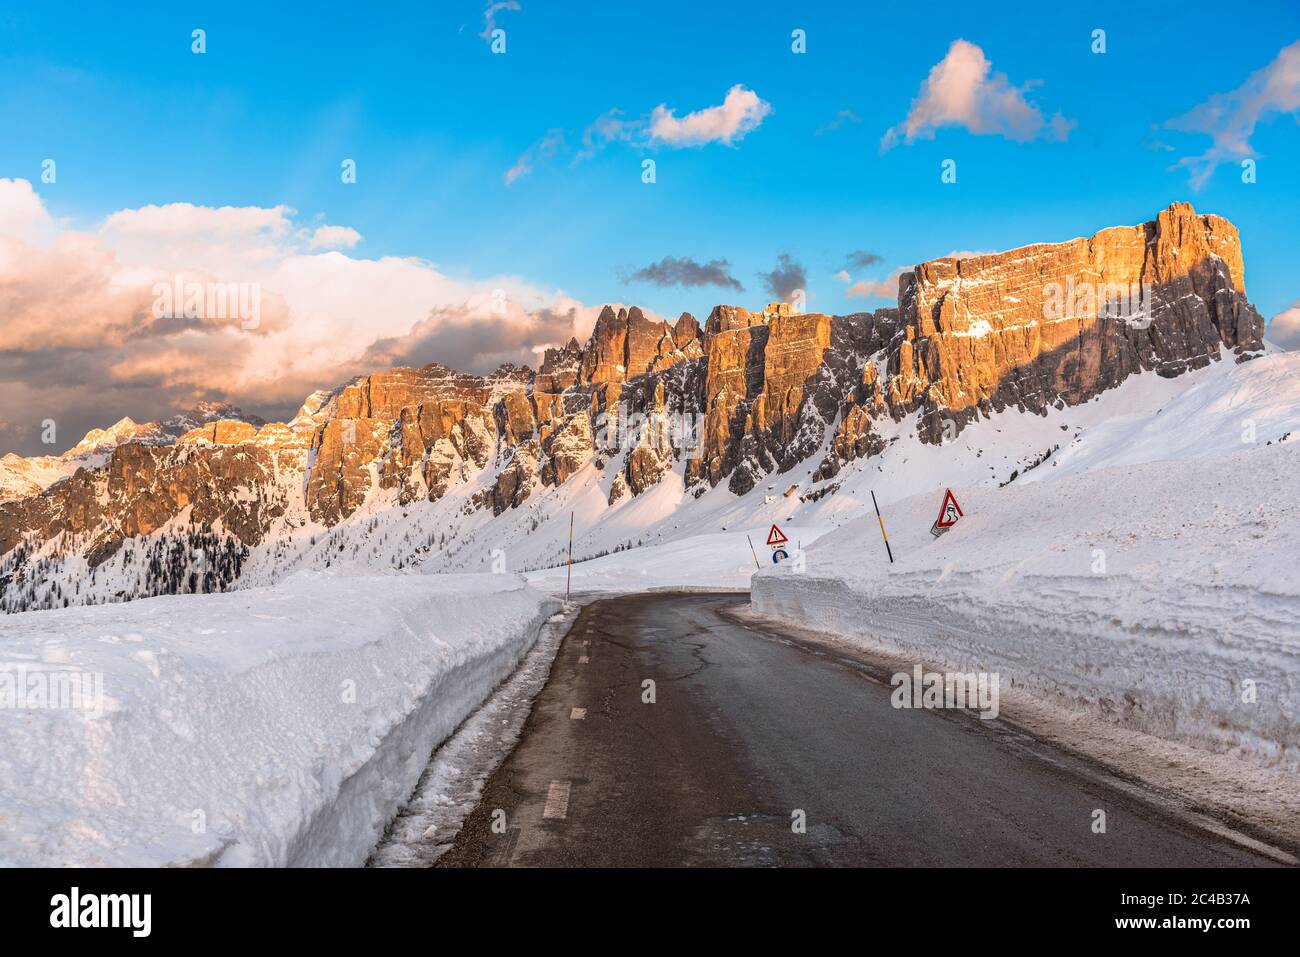 Une route vide et droite du col de montagne dans un magnifique paysage enneigé avec des sommets rocheux imposants et chaleureusement éclairés par un soleil couchant en hiver Banque D'Images